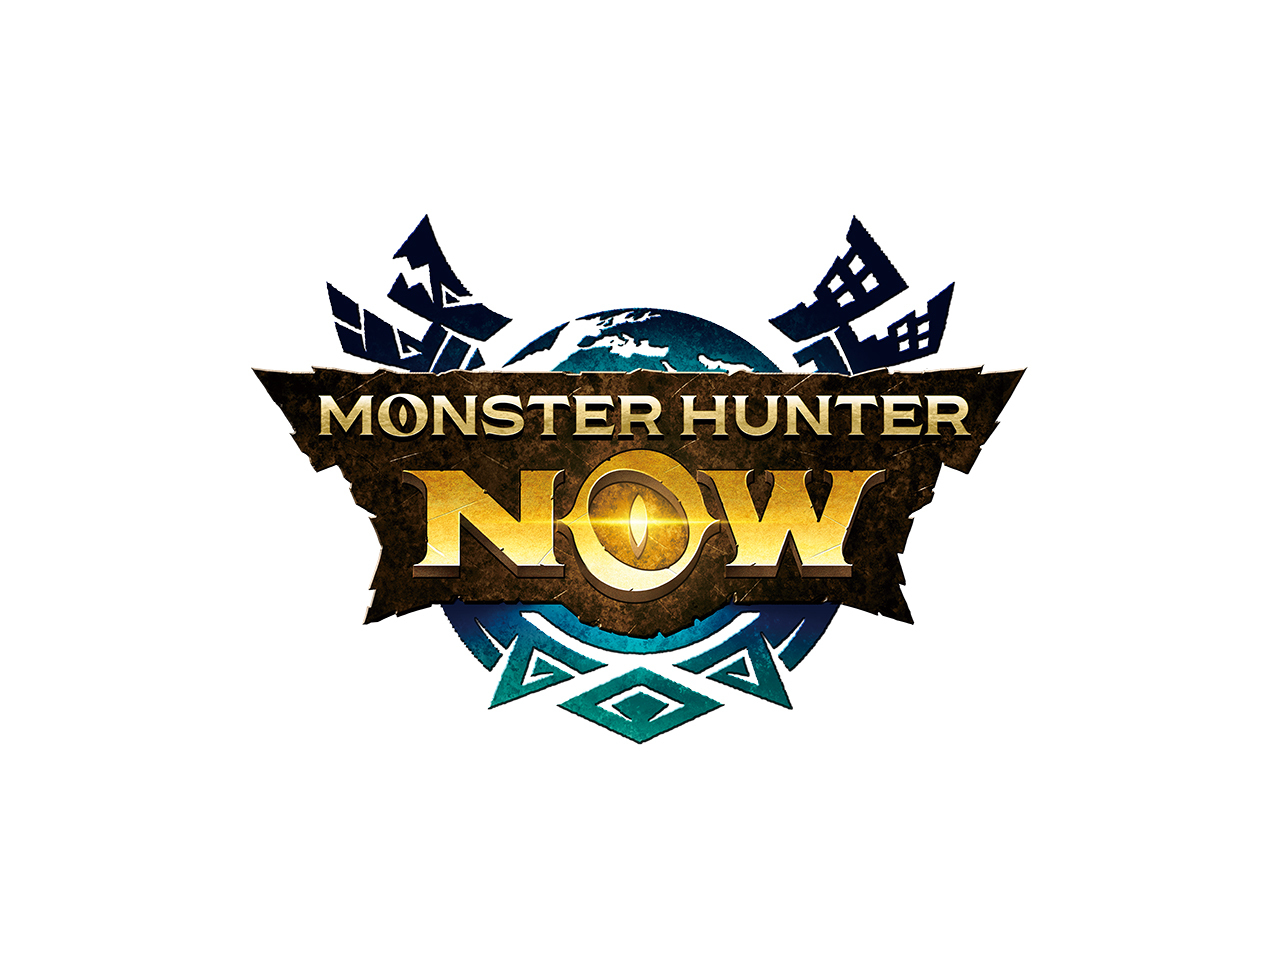 Niantic、「モンハン」位置情報活用ARゲーム「Monster Hunter Now」を9月14日配信へ